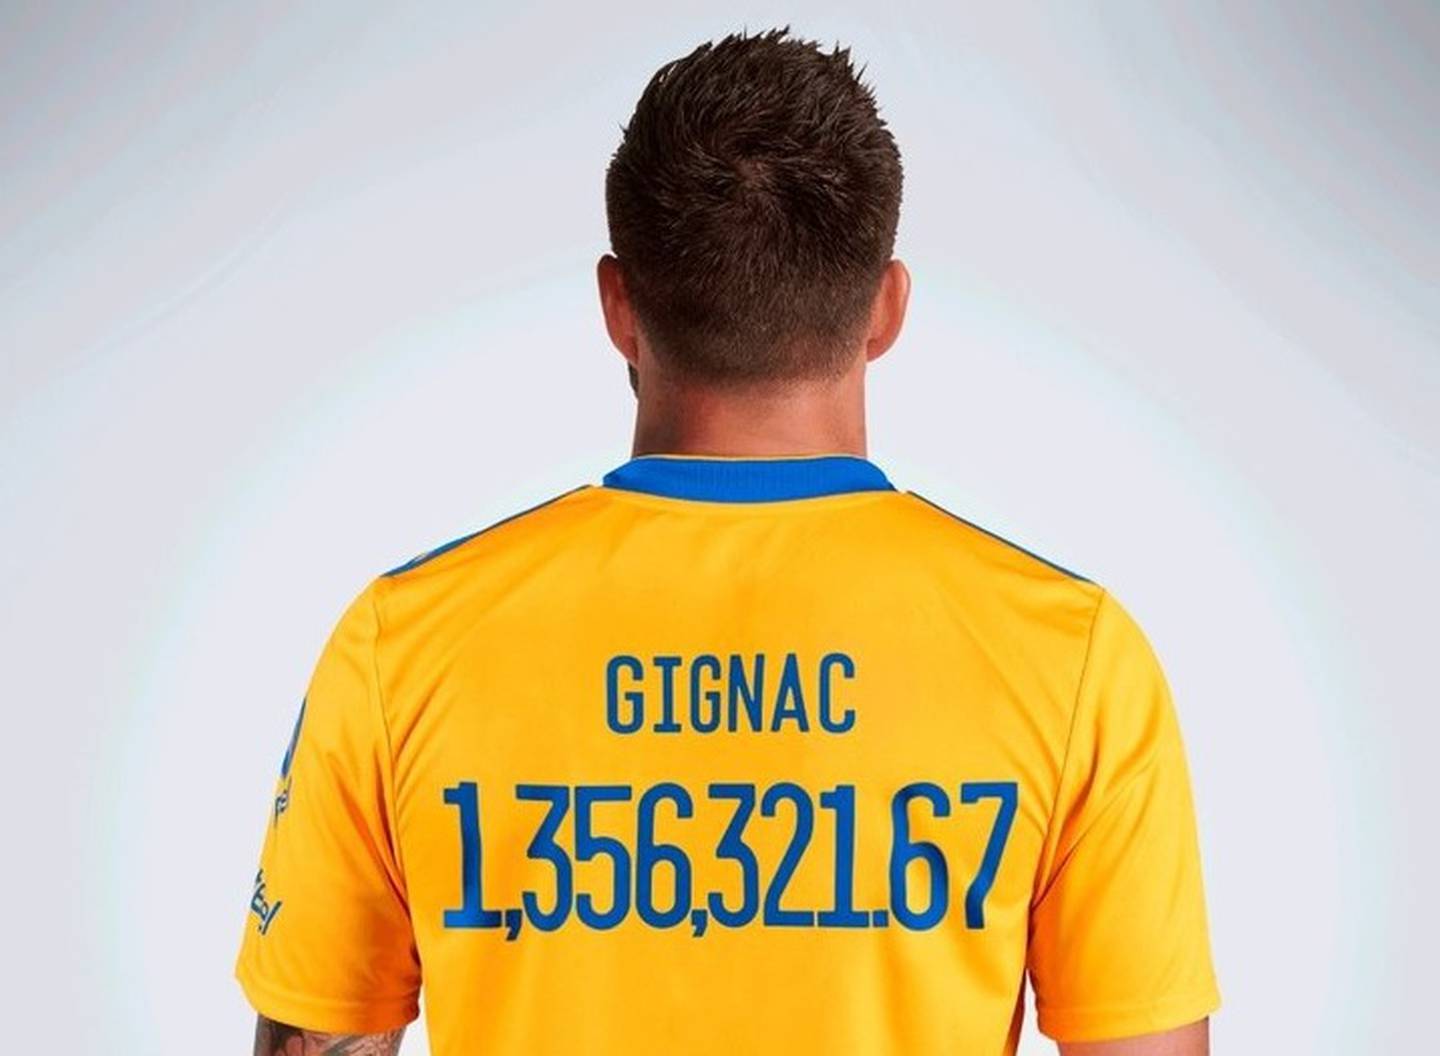 André-Pierre Gignac, una de las estrellas de Tigres, porta una camiseta con el valor máximo que tuvo bitcoin hace unos días. (Cortesía: Tigres)